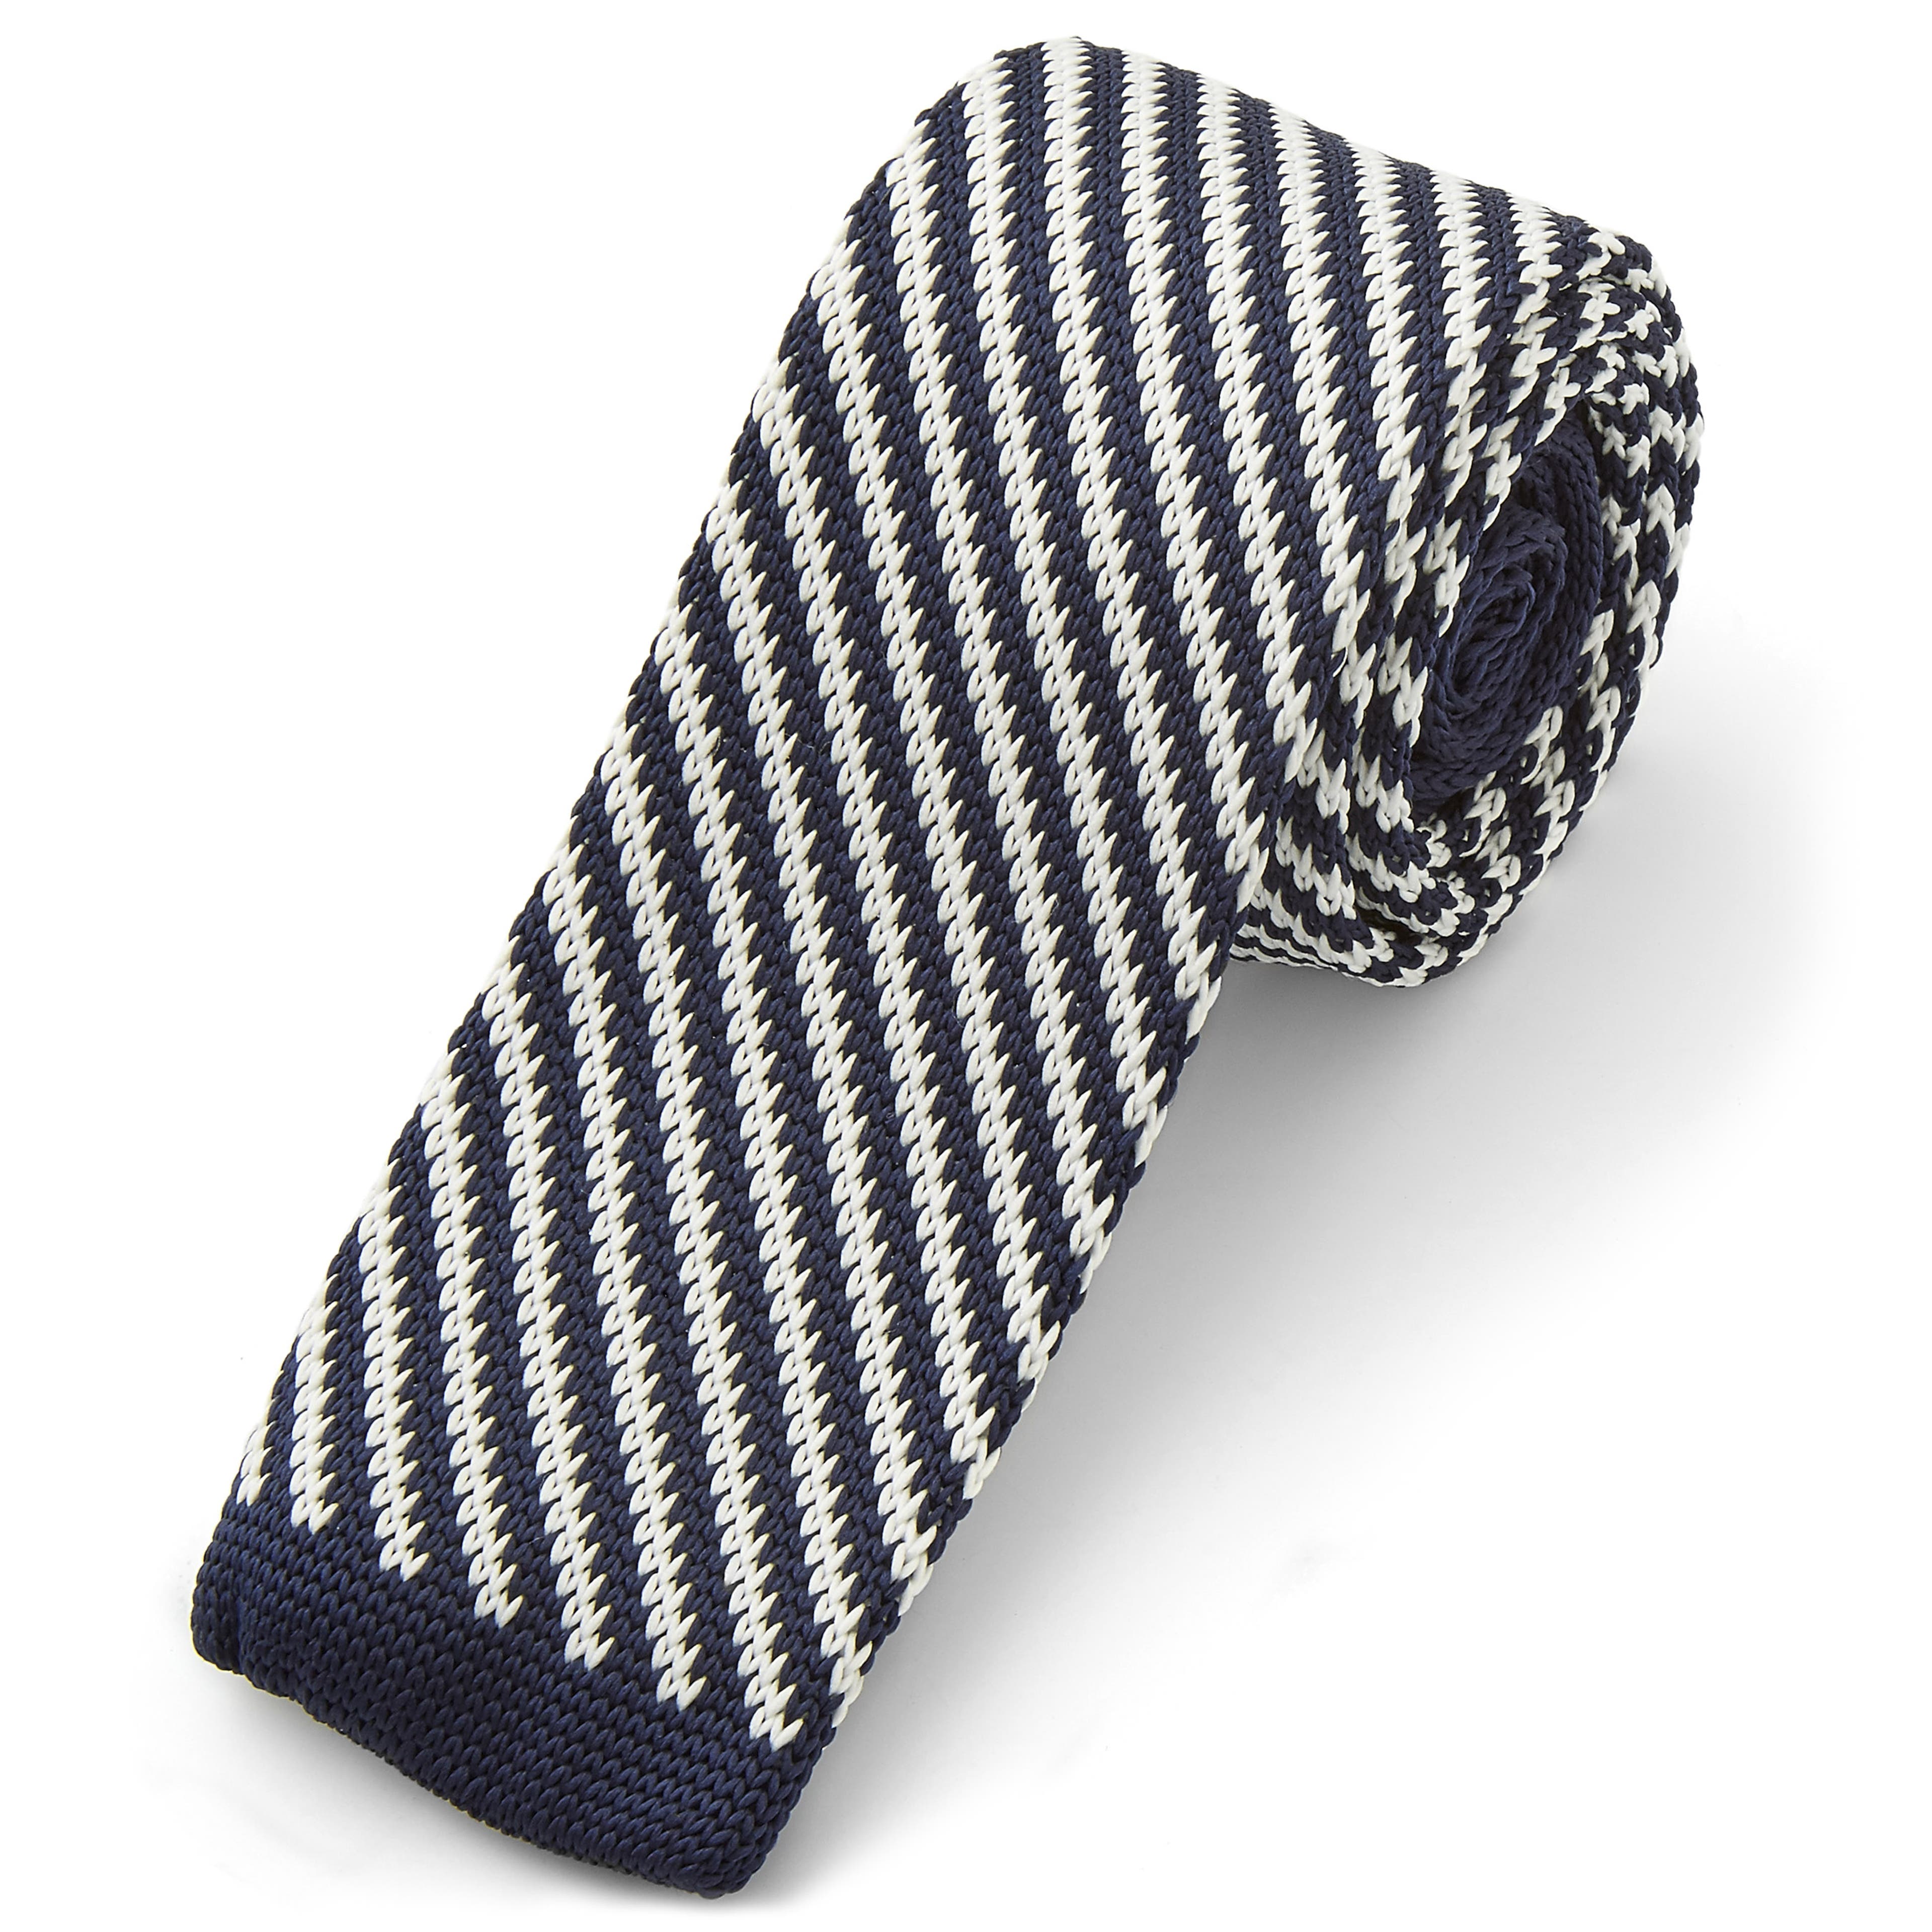 Wit & blauw gestreepte gebreide stropdas